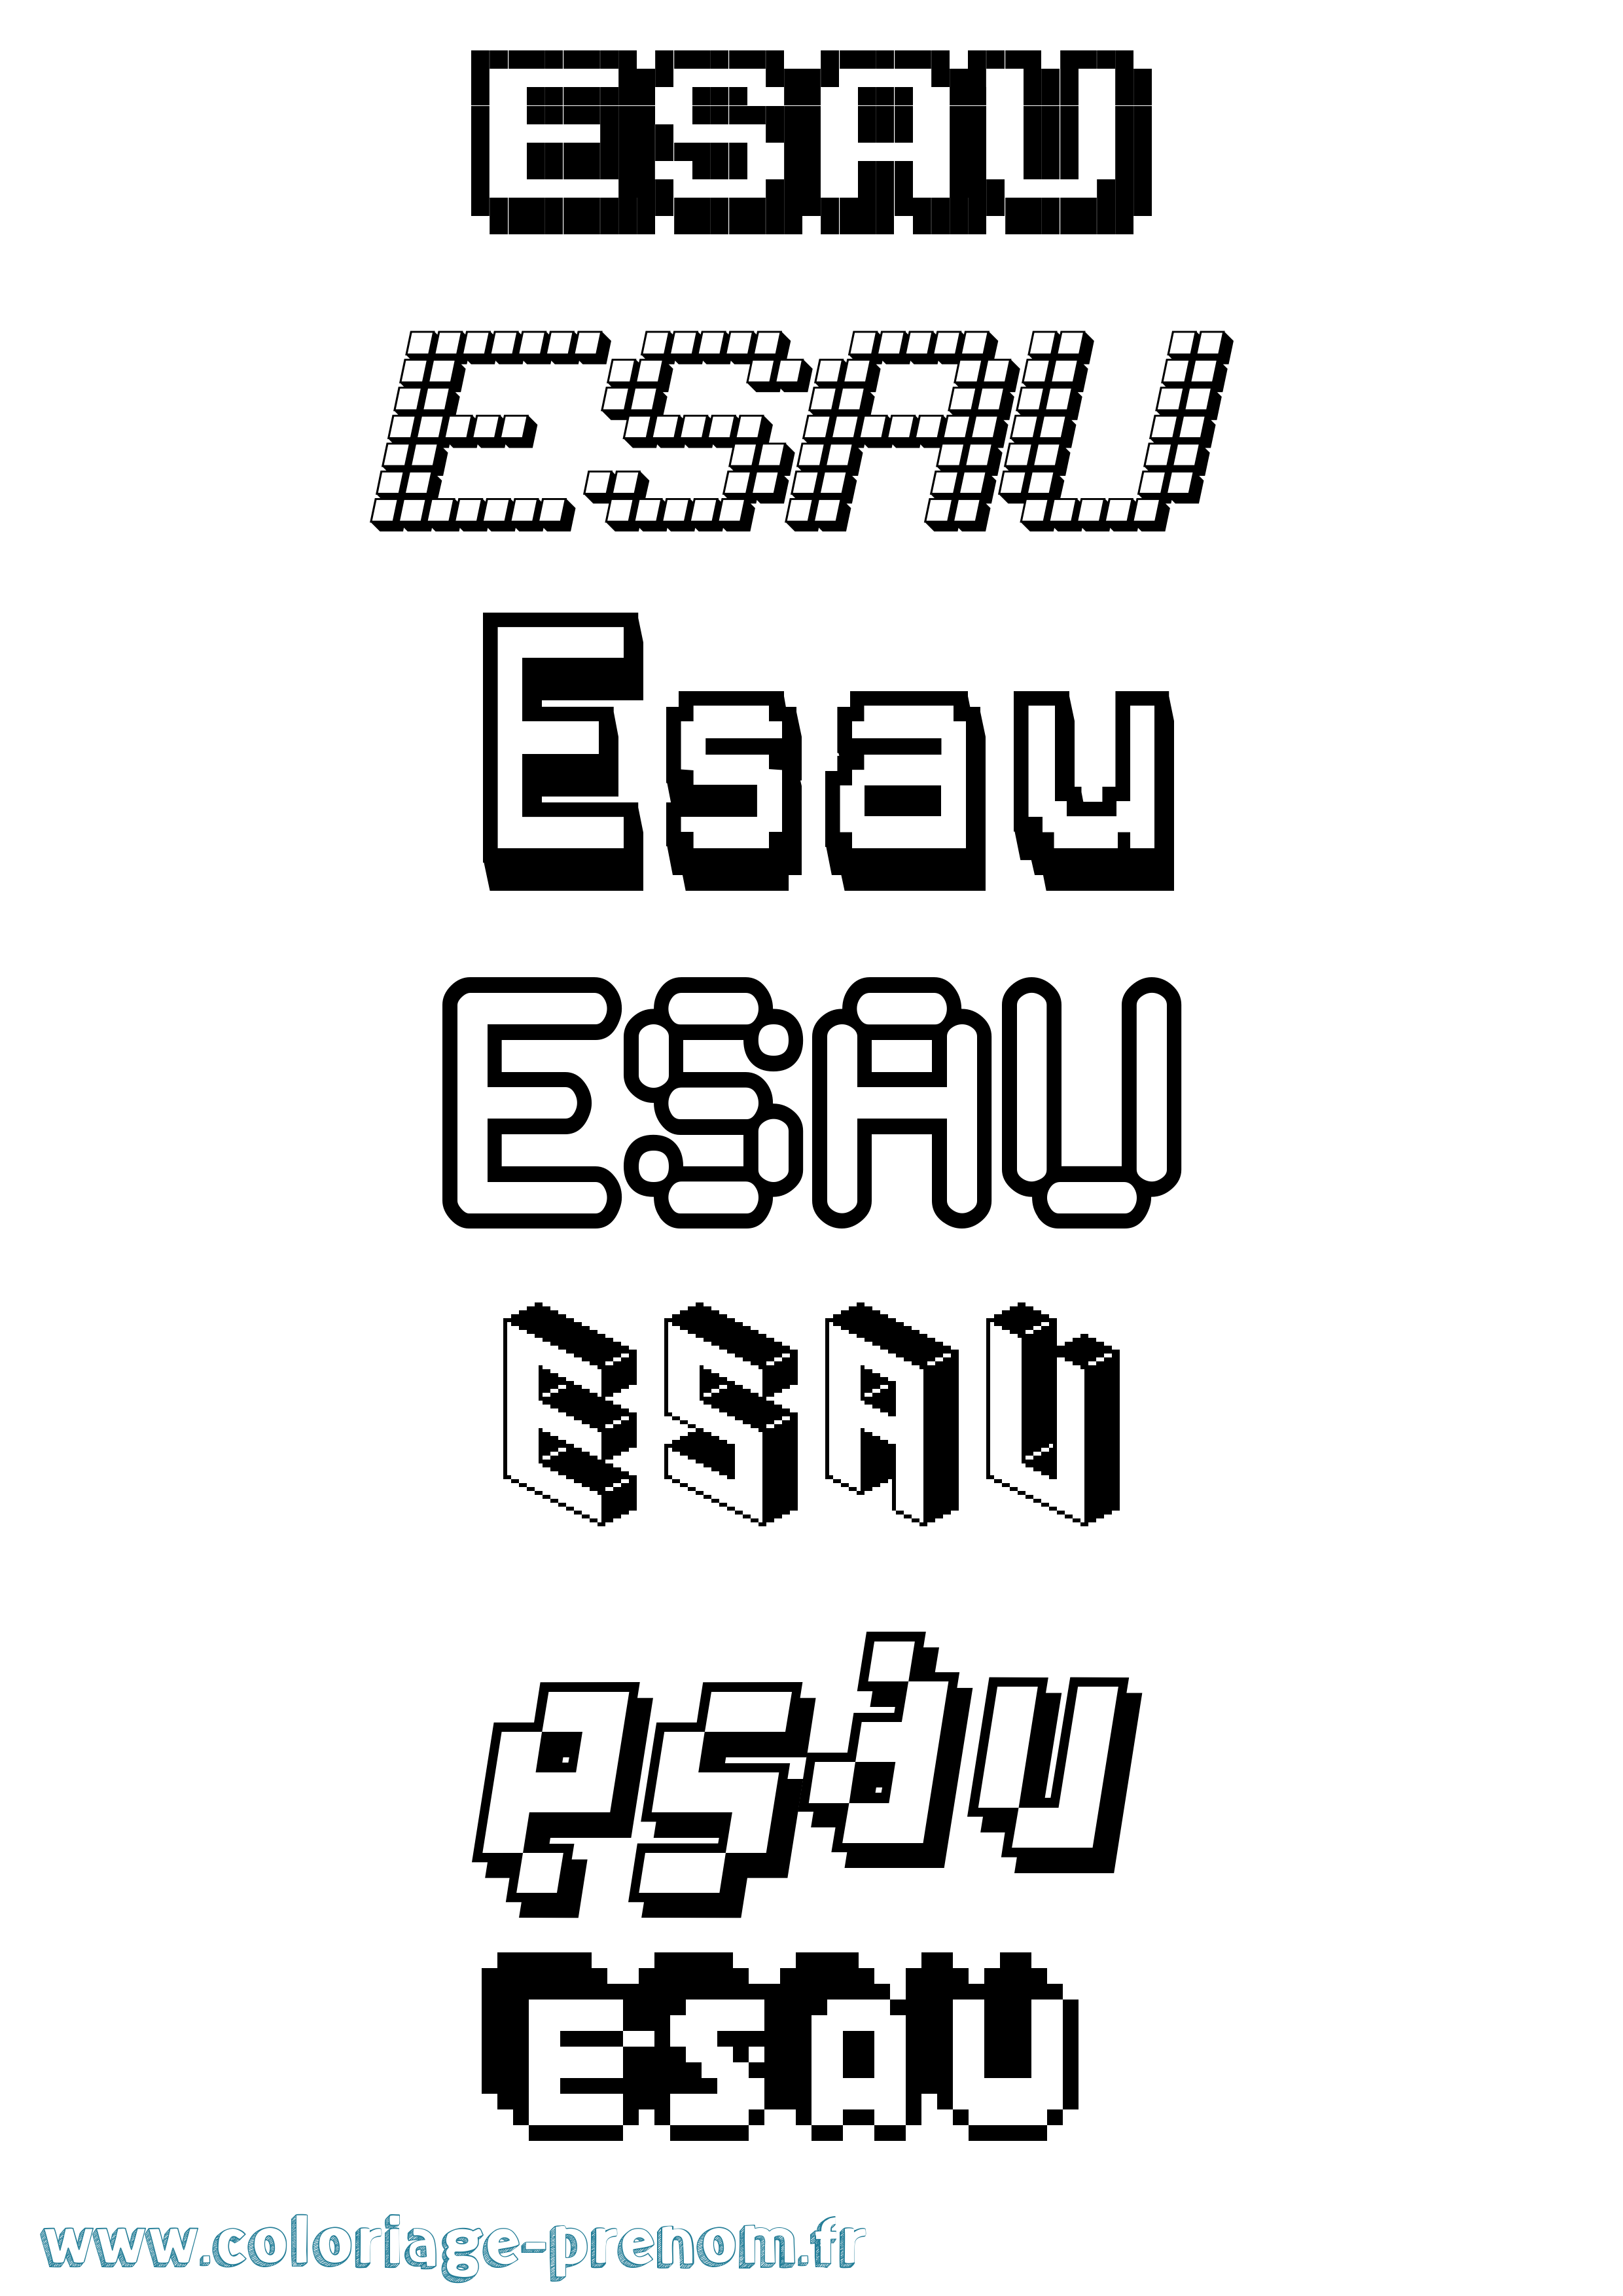 Coloriage prénom Esau Pixel